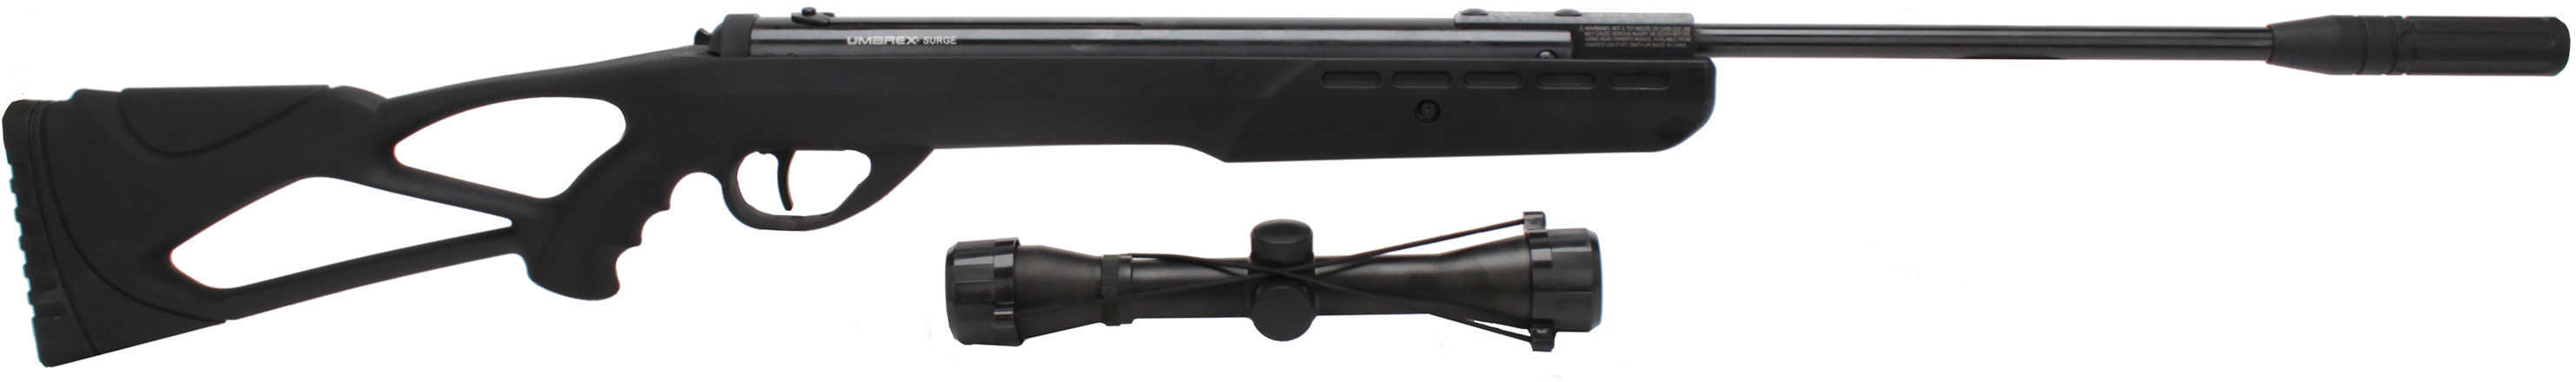 Umarex Surge Combo .177 Air Rifle W/ 4X32MM Air-Gun Scope